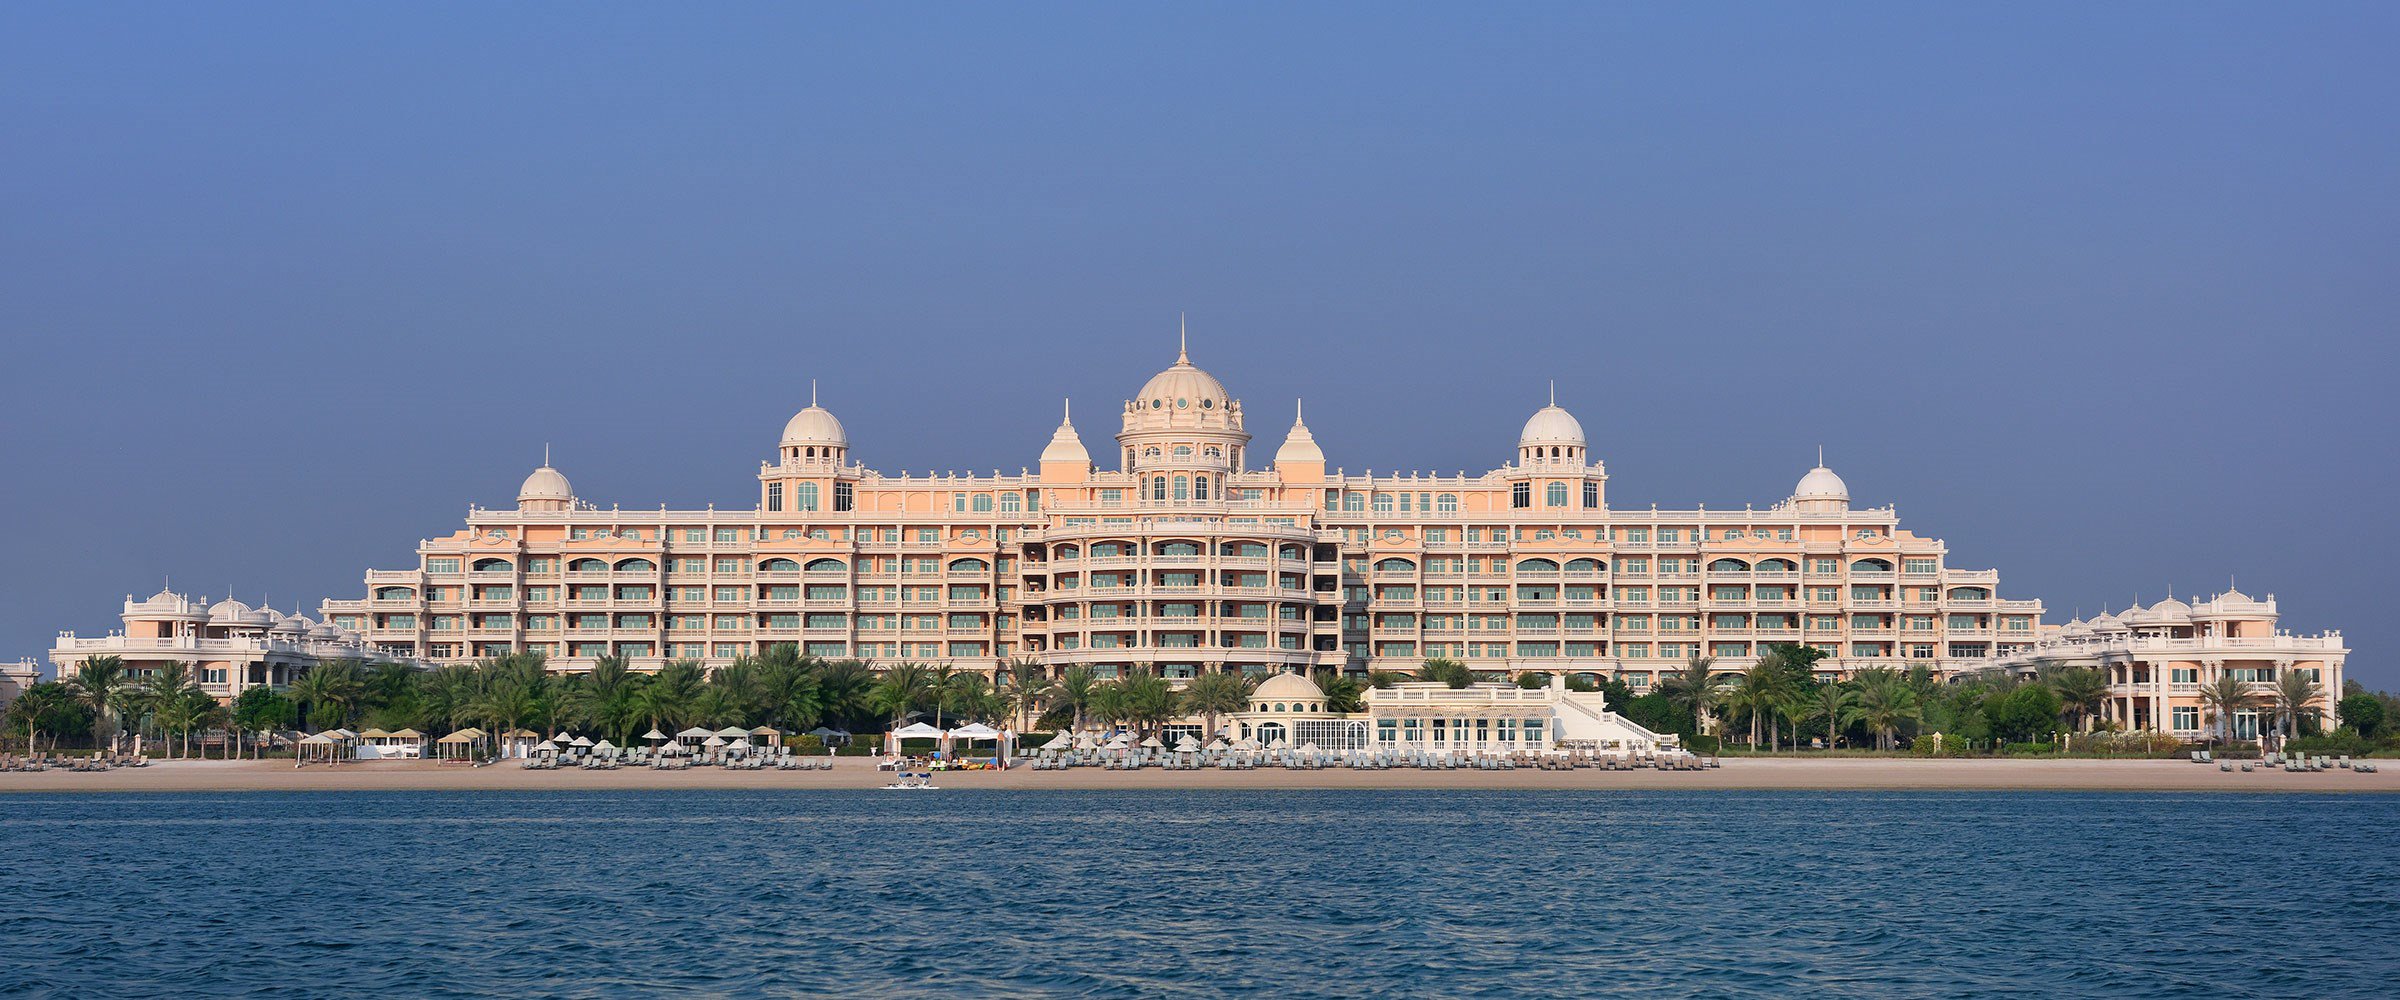 وظائف شاغرة بفنادق كمبينسكي في الامارات لعدة تخصصات